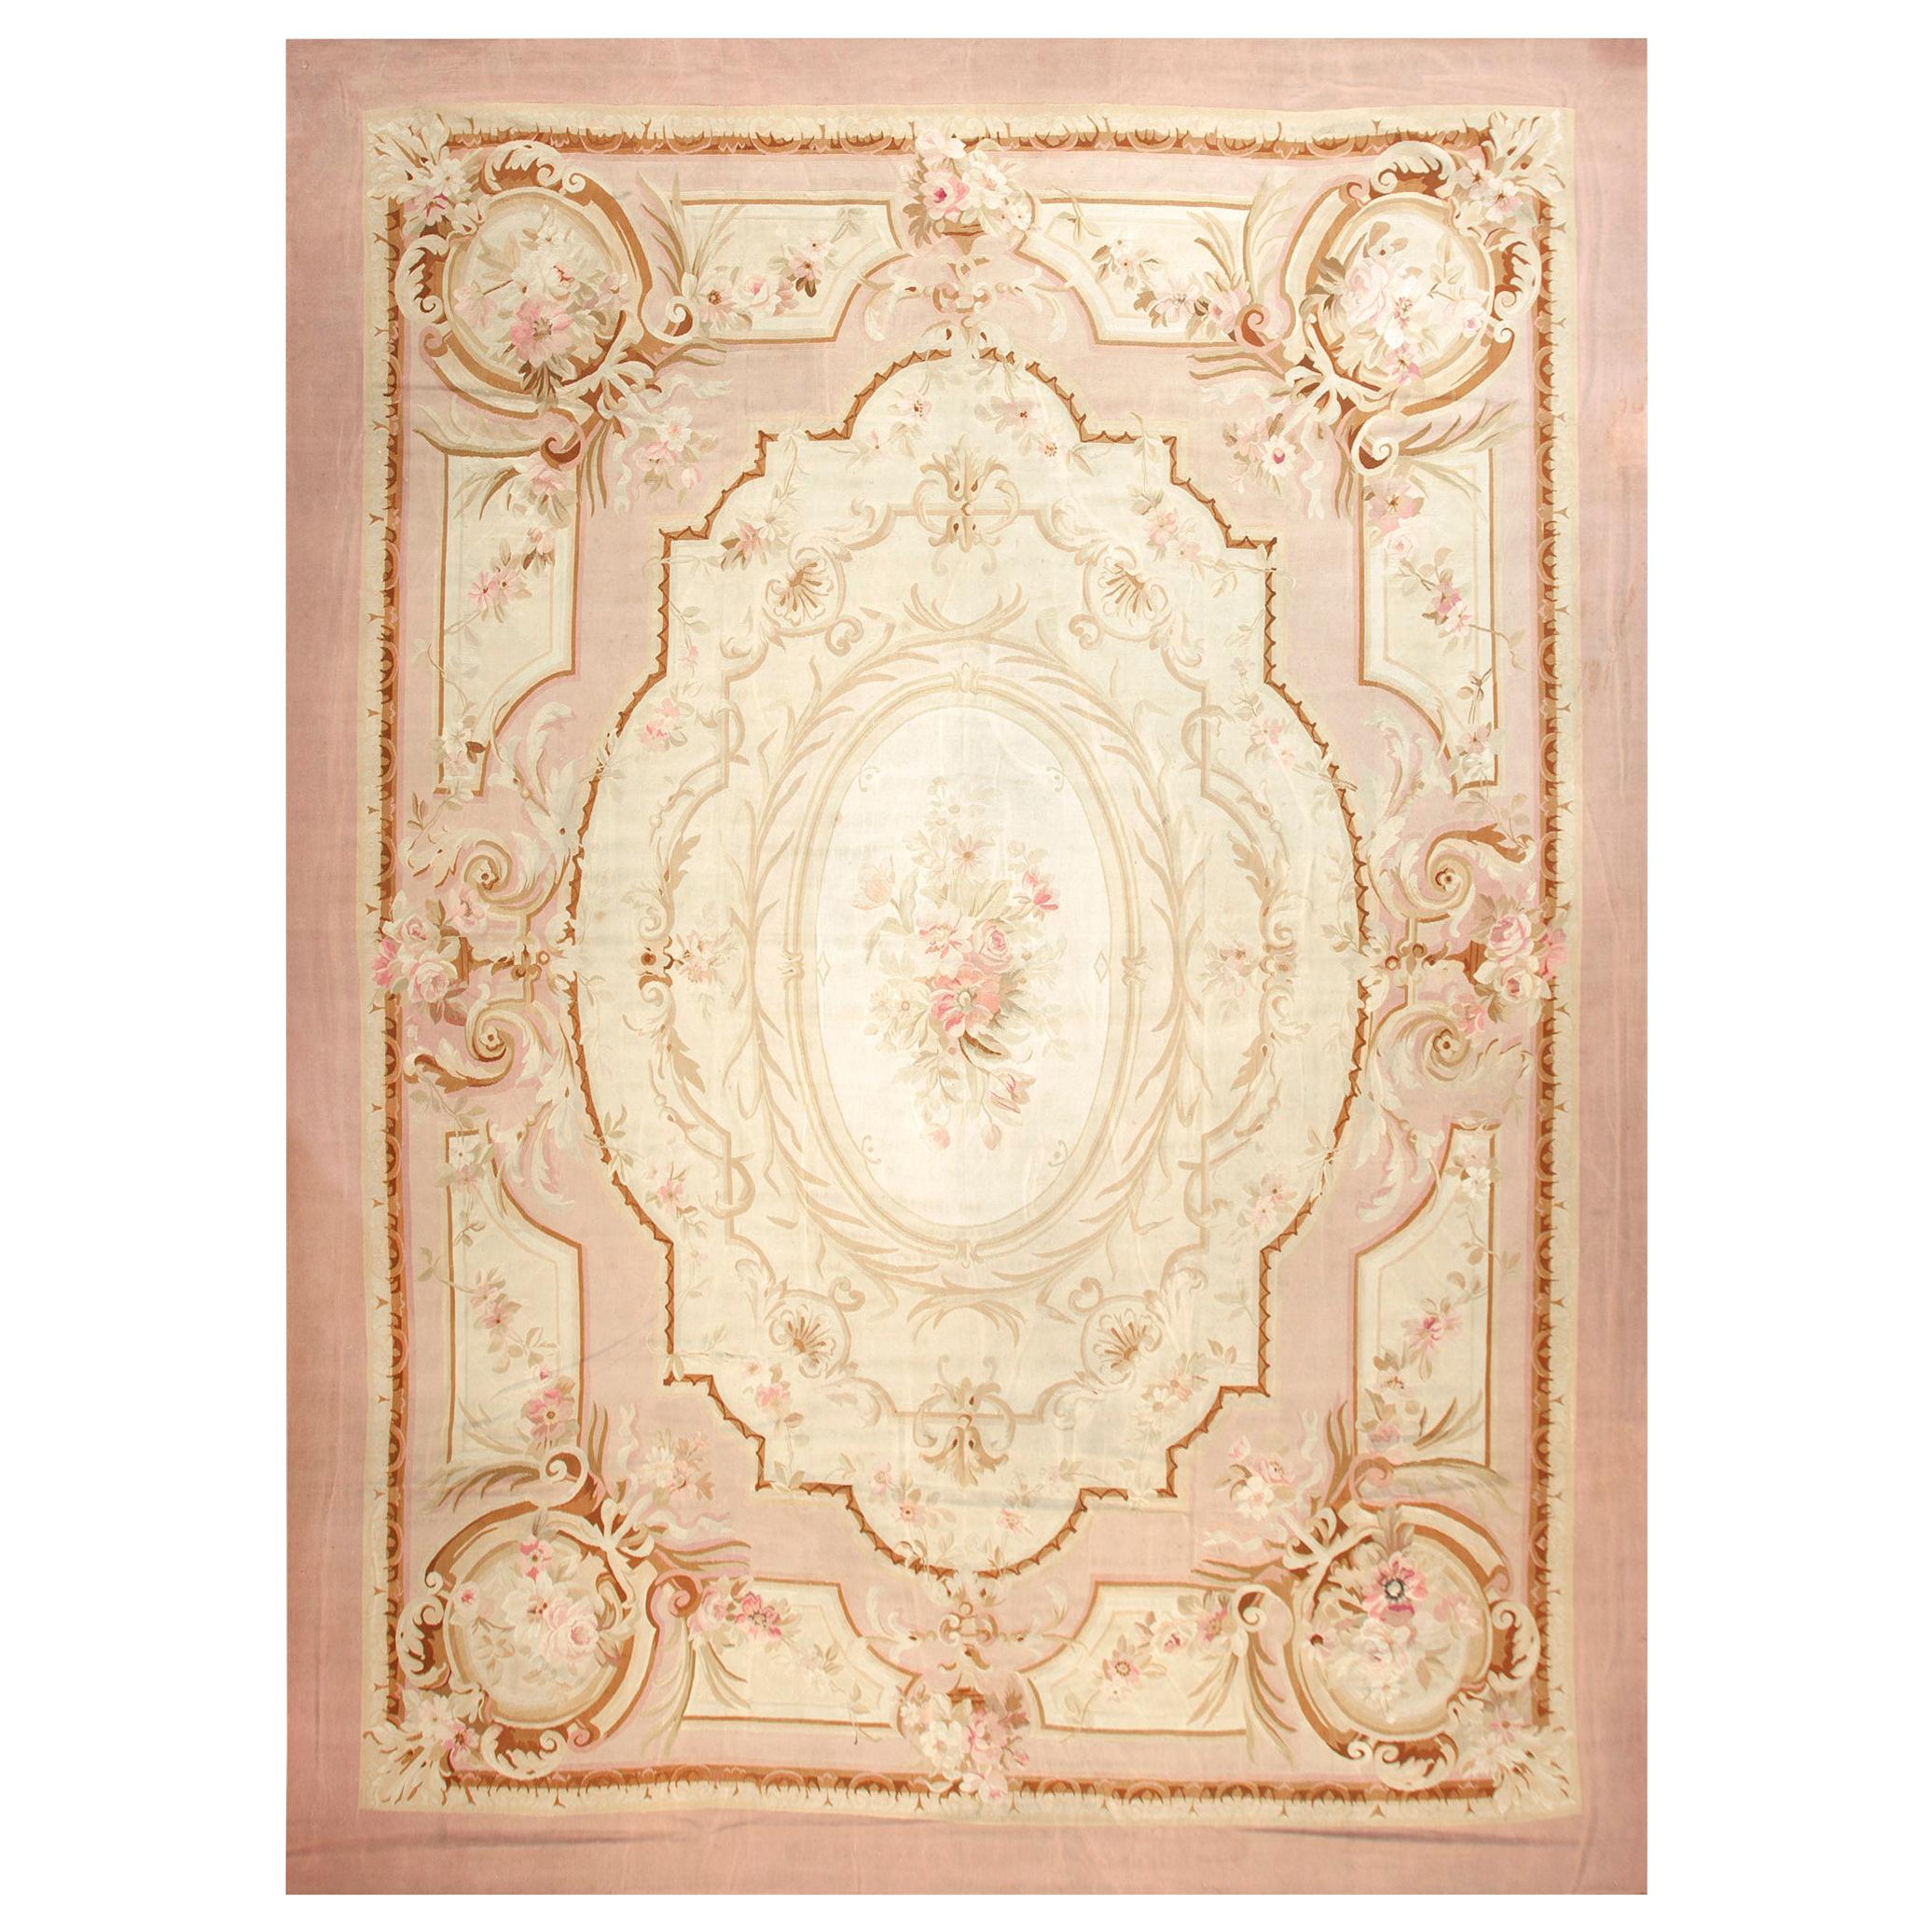 19th Century French Aubusson Carpet Napoleon III Period (10'10" x 15'-330 x 457)